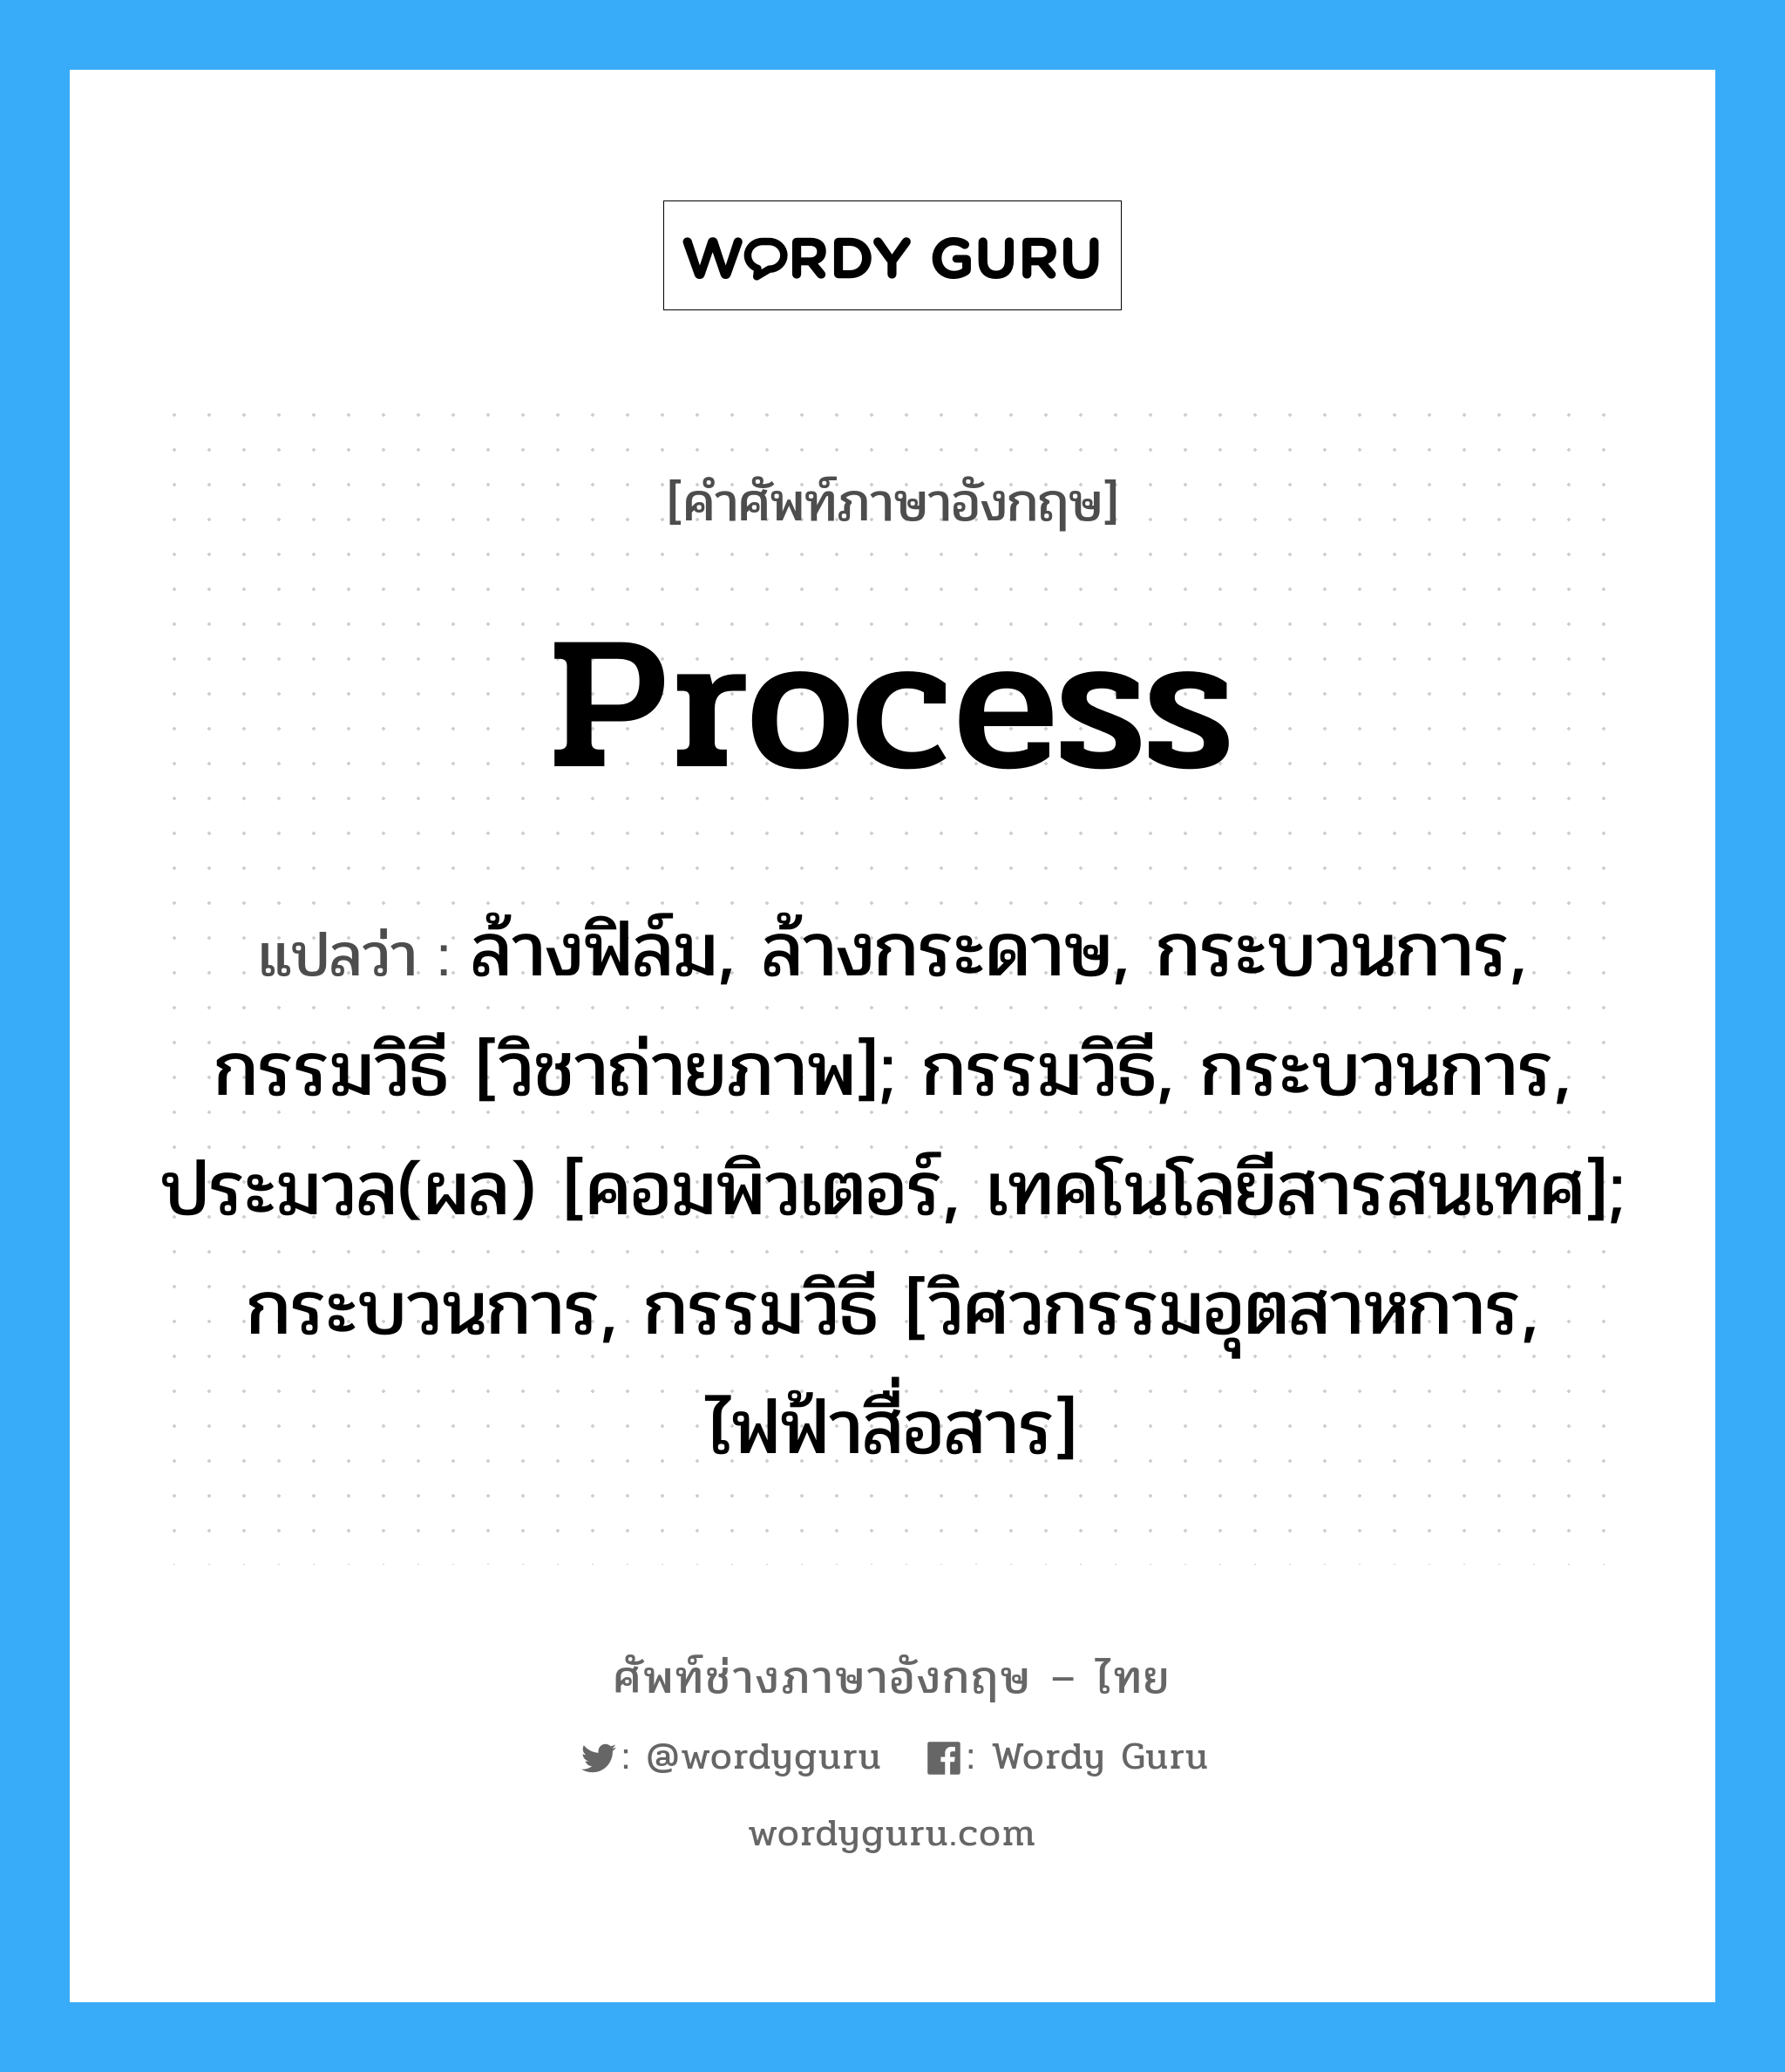 Process แปลว่า?, คำศัพท์ช่างภาษาอังกฤษ - ไทย Process คำศัพท์ภาษาอังกฤษ Process แปลว่า ล้างฟิล์ม, ล้างกระดาษ, กระบวนการ, กรรมวิธี [วิชาถ่ายภาพ]; กรรมวิธี, กระบวนการ, ประมวล(ผล) [คอมพิวเตอร์, เทคโนโลยีสารสนเทศ]; กระบวนการ, กรรมวิธี [วิศวกรรมอุตสาหการ, ไฟฟ้าสื่อสาร]